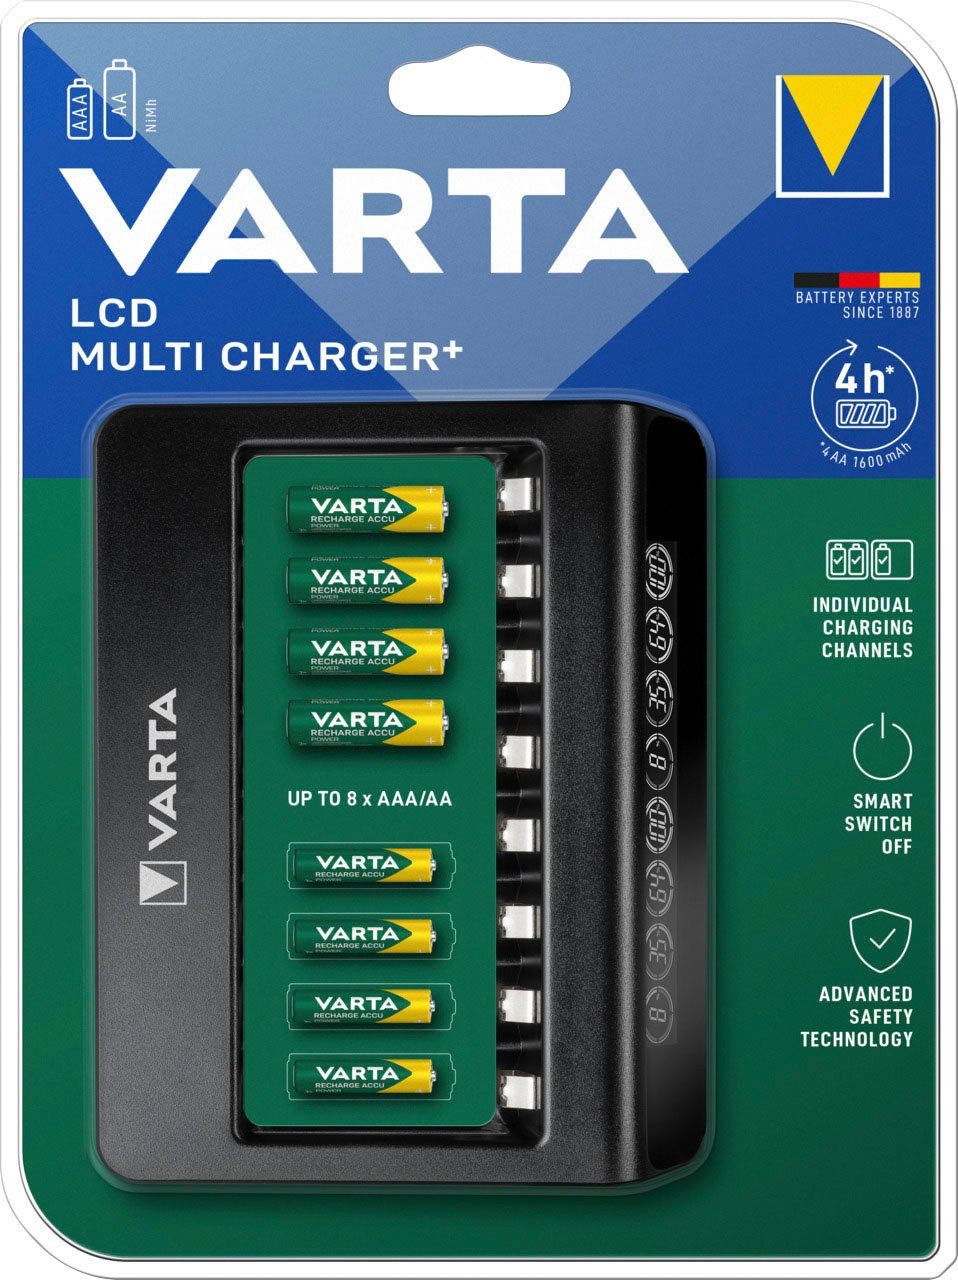 VARTA LCD MULTI LADEGERÄT 57671 FOR 8 AA AAA BATTERIEN TIMER PROTECTION USB NEU 